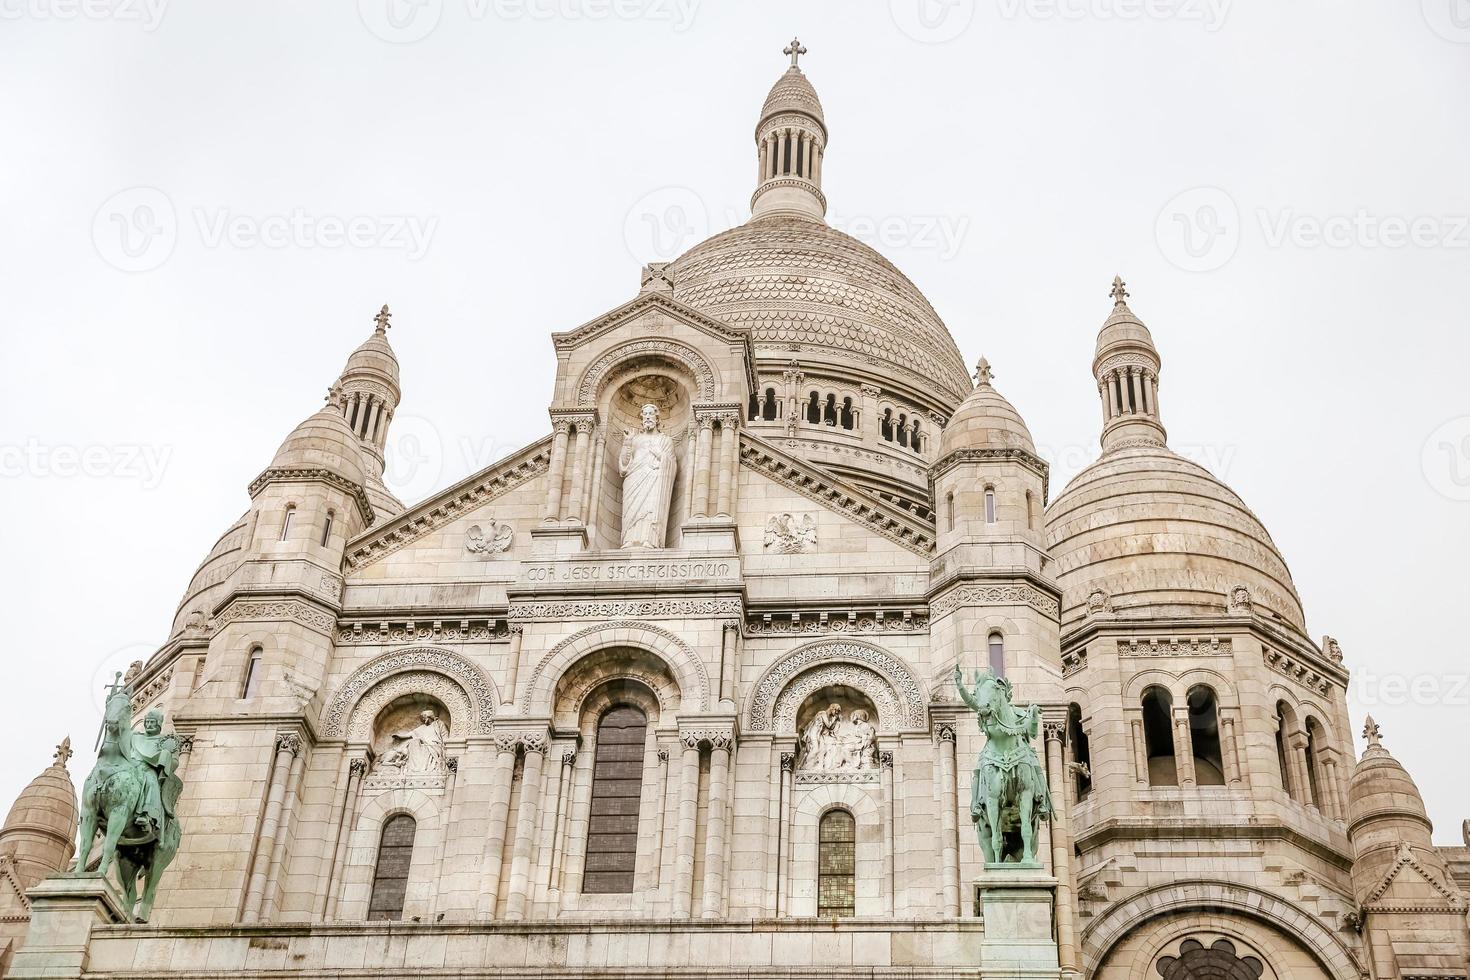 Basílica de sacre coeur em montmartre em paris, frança foto